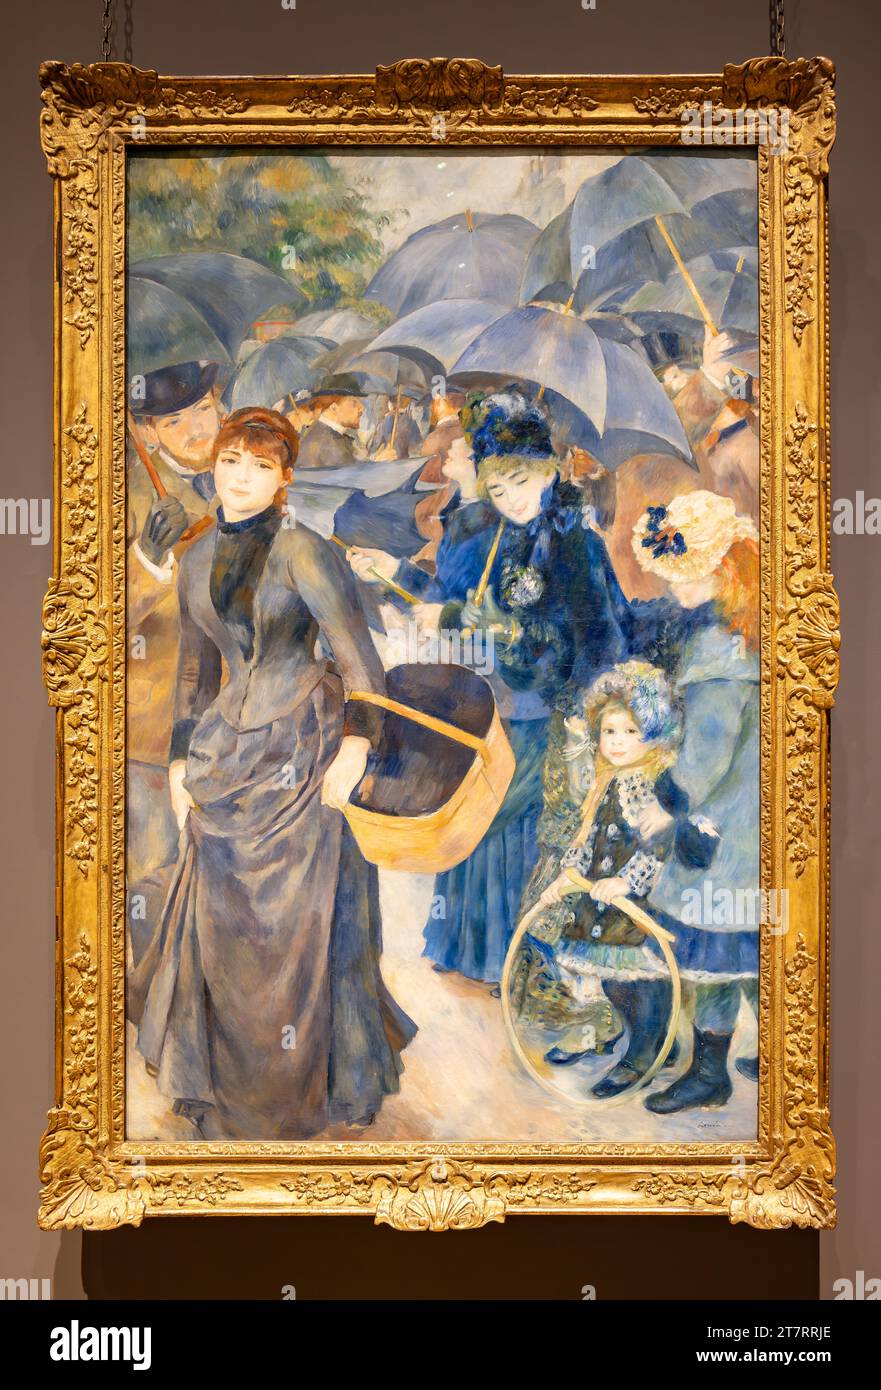 Londra, Regno Unito - 19 maggio 2023: The Umbrellas painting by Pierre-Auguste Renoir, è un olio su tela esposto alla National Gallery of london, Inghilterra Foto Stock